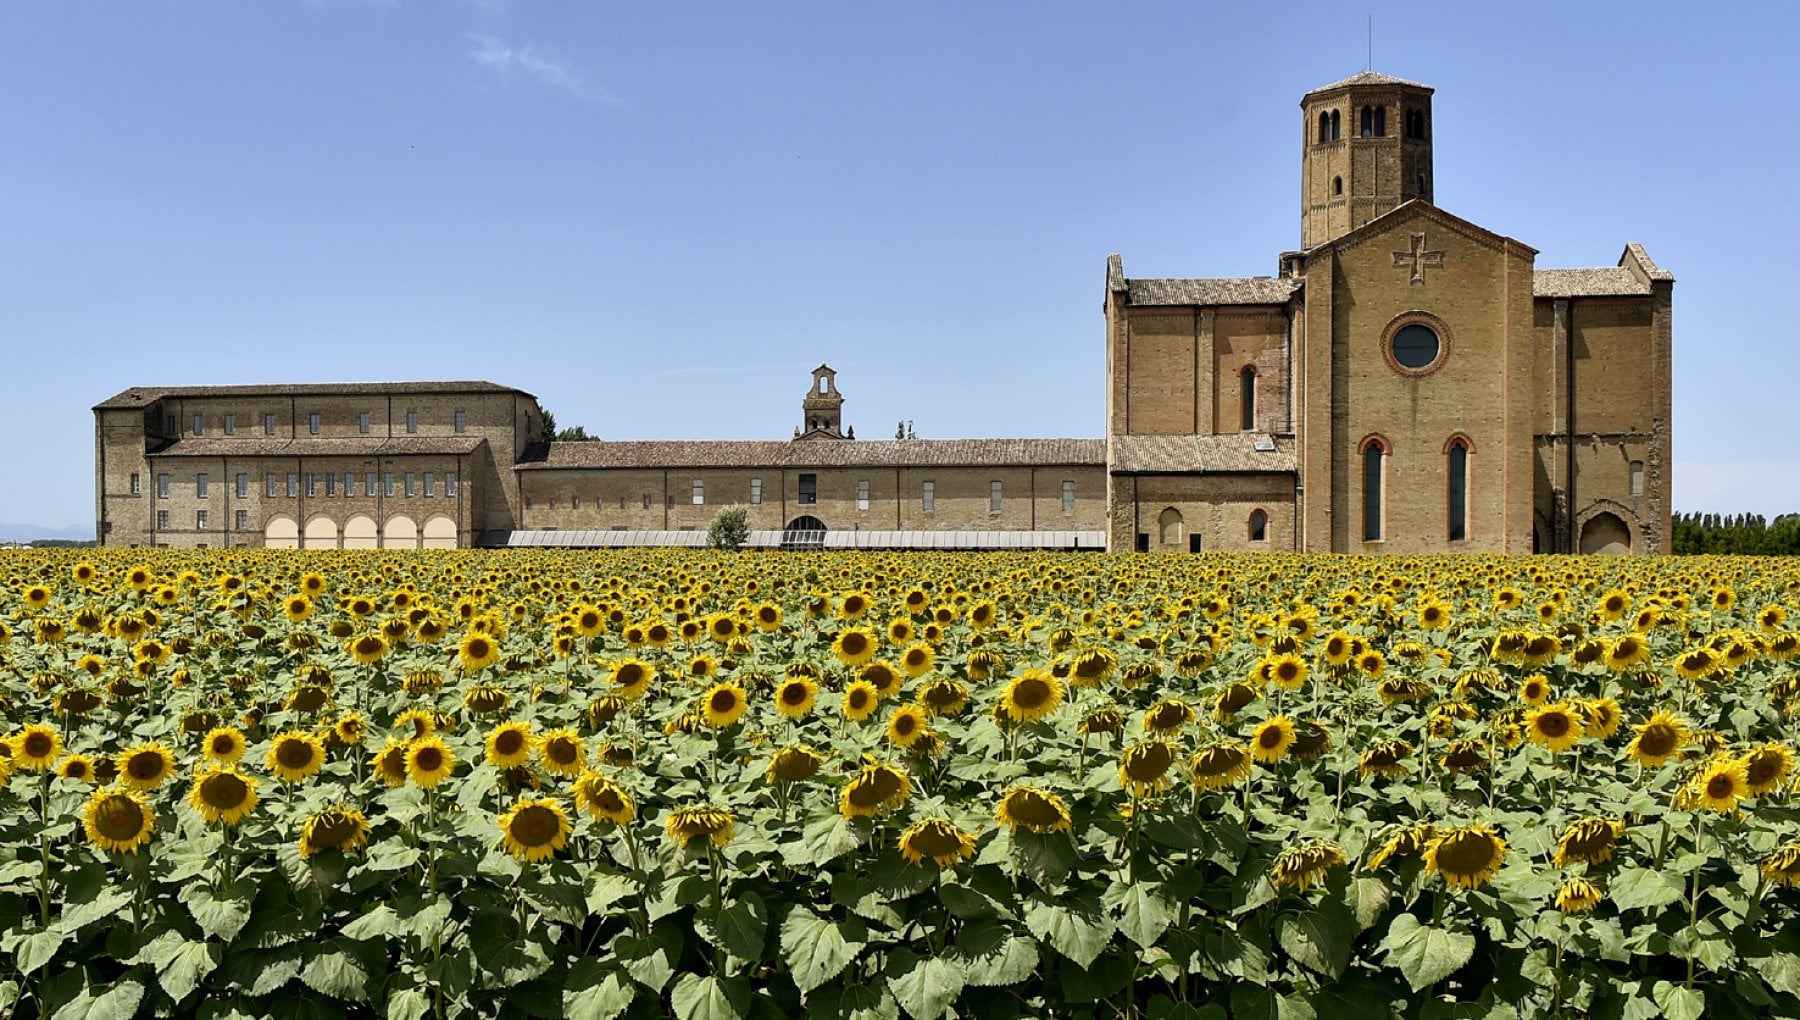 Parma, L’Abbazia di Valserena circondata da girasoli, ph. Marco Vasini via Repubblica.it, CC_BY_NC_SA 3.0